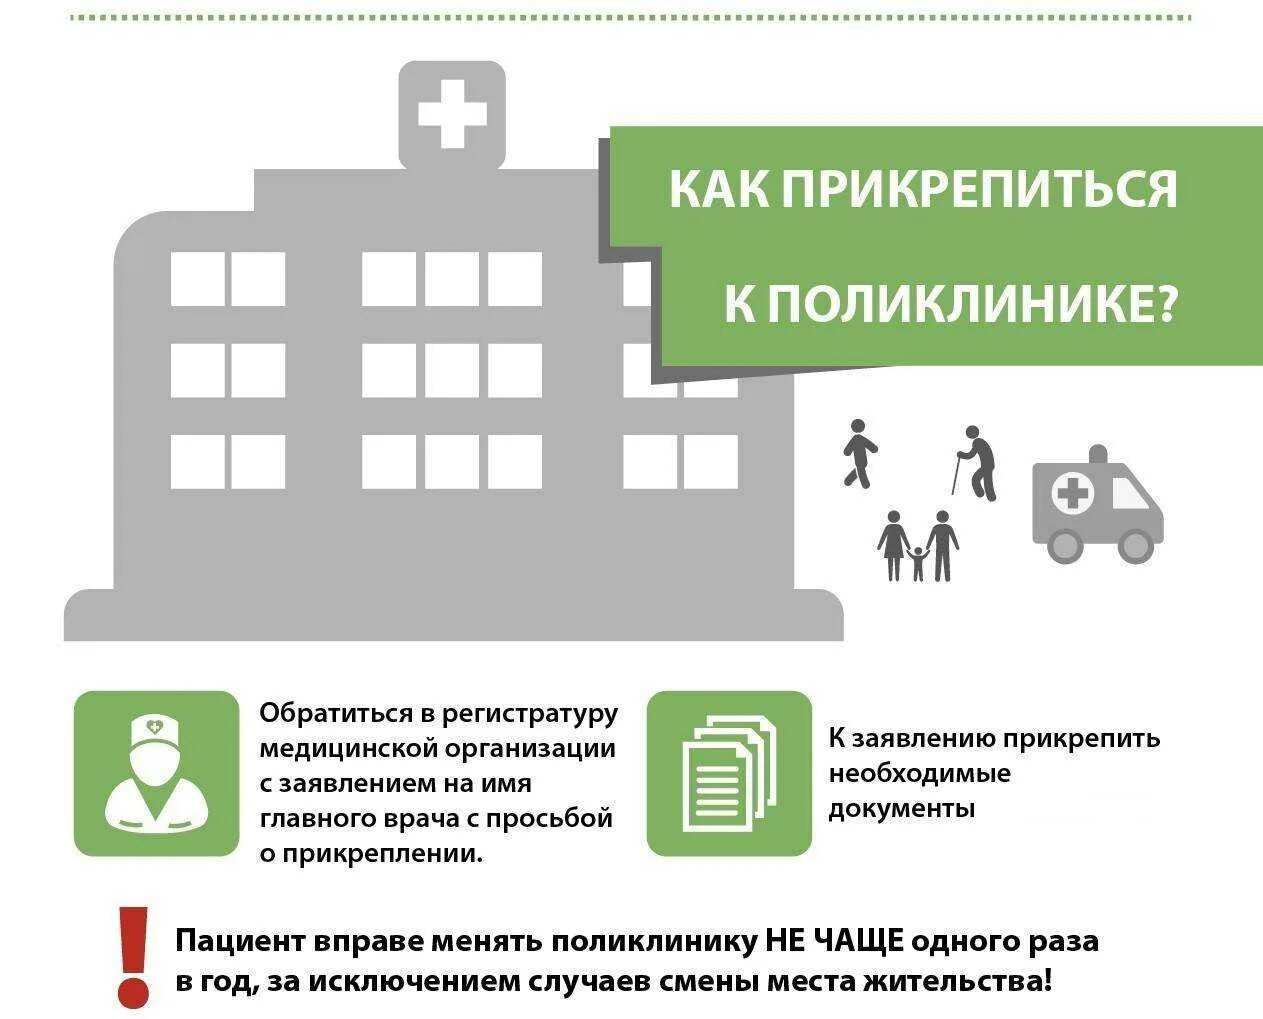 Документы для прикрепления к поликлинике ребенка Московская область. Прикрепление к поликлинике по месту прописки. Прикрепиться к поликлинике. Документы для прикрепления к поликлинике по месту жительства.